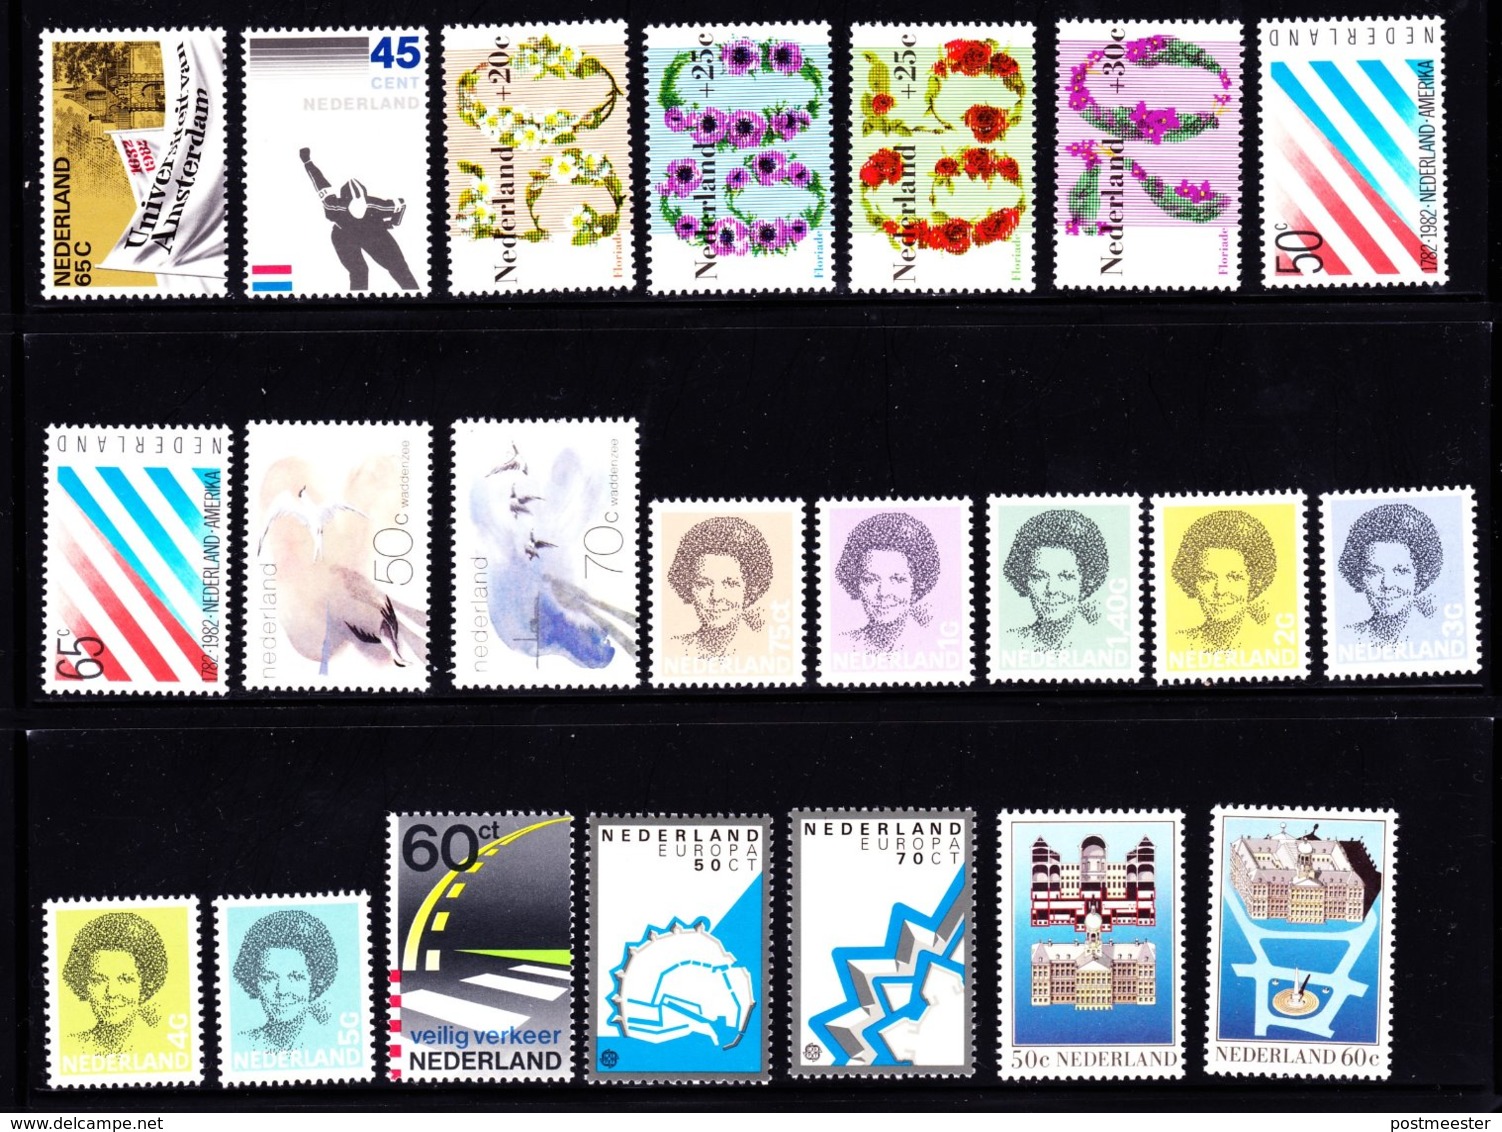 Nederland: Volledig Jaar 1982 - 19 Zegels, 1 Blok, 1 Boekje - Postfris - Années Complètes